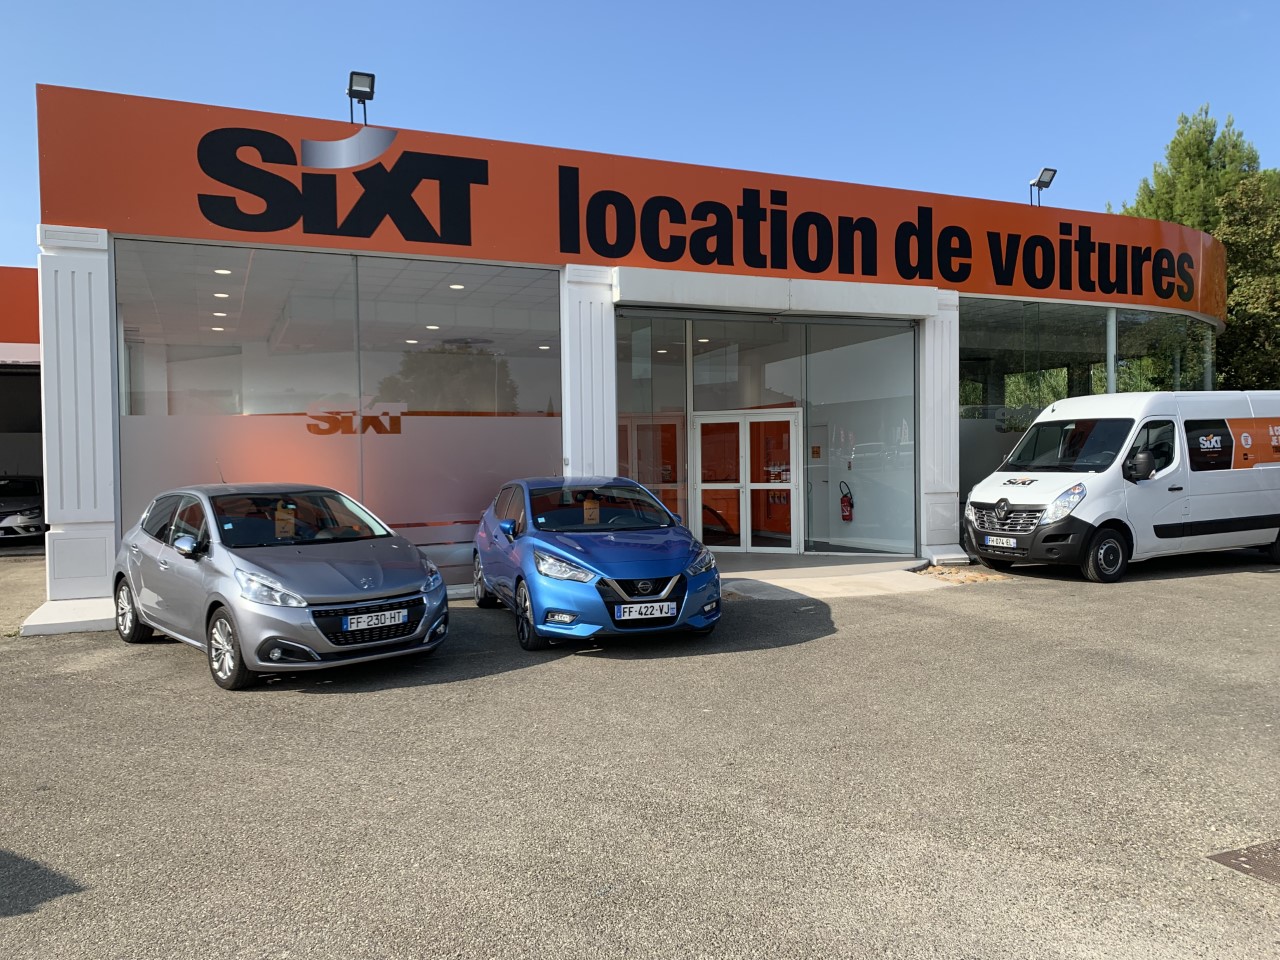 Images SIXT | Location voiture Avignon et utilitaire